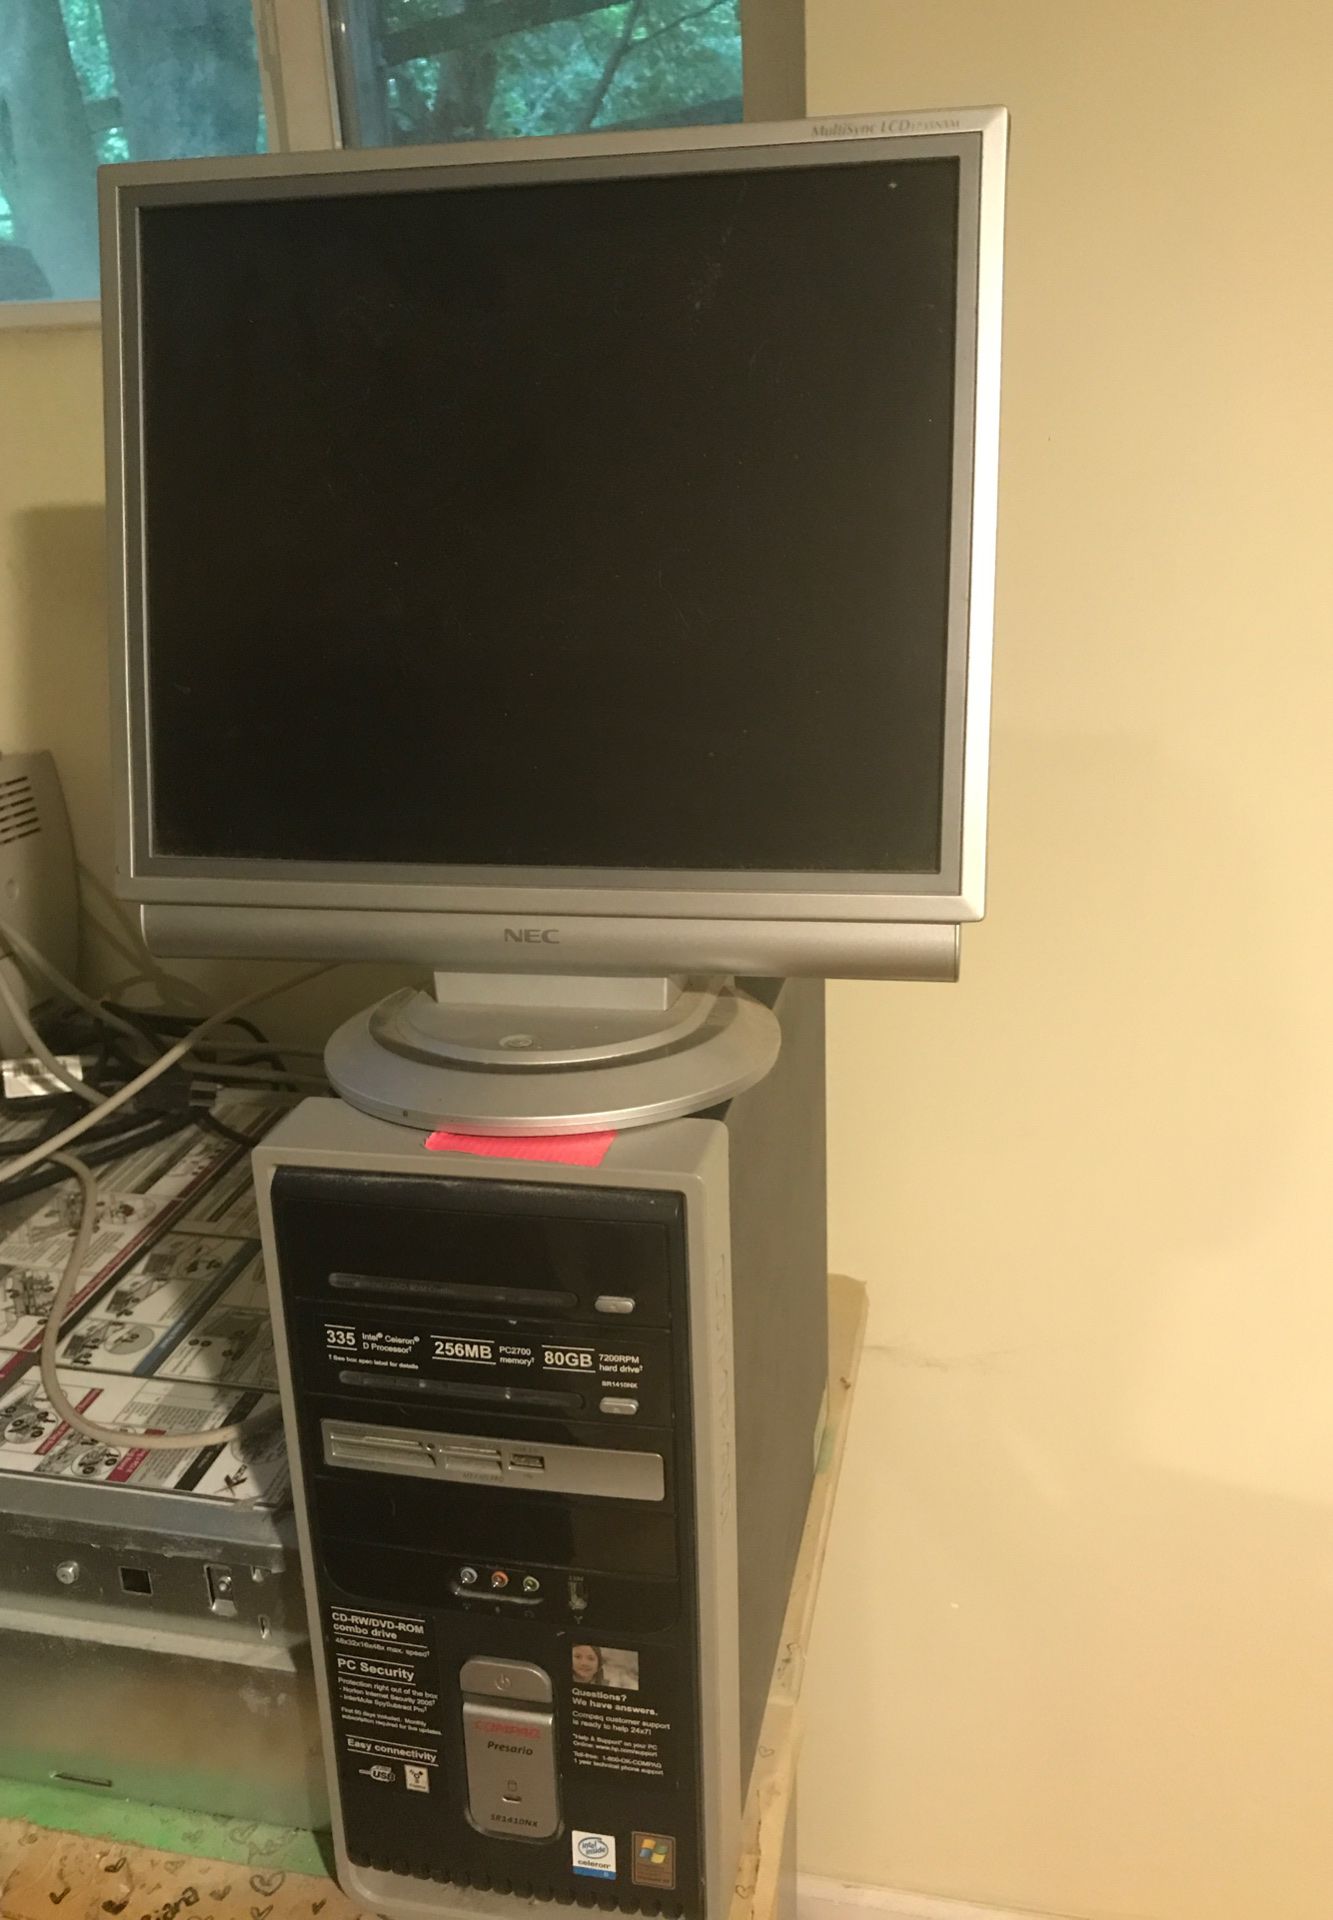 Compaq presario with NEC monitor